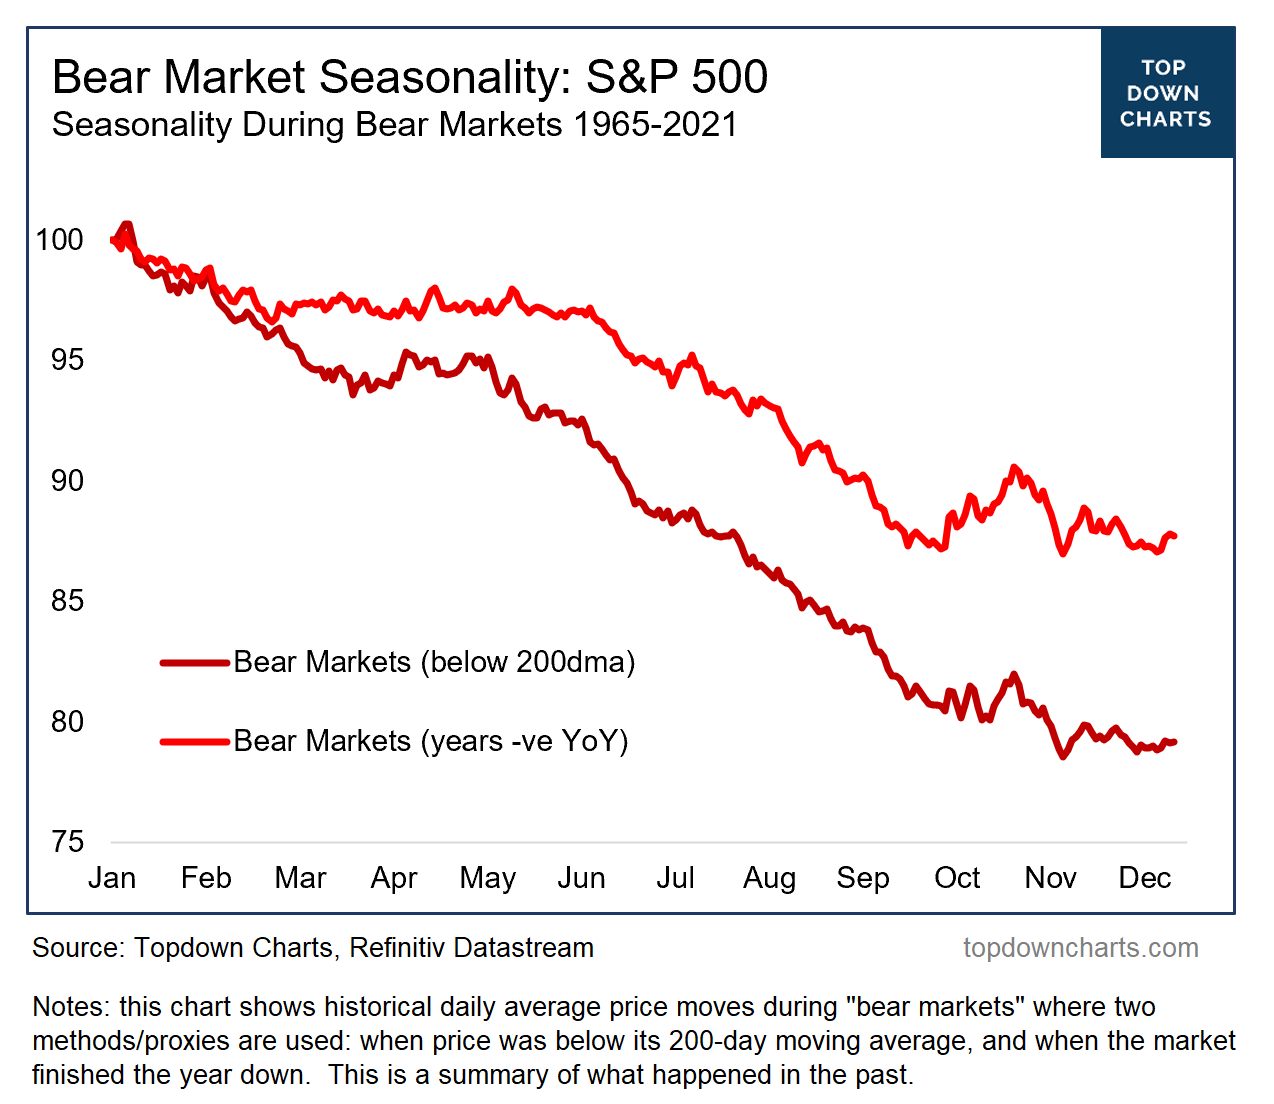 Bear market seasonality chart